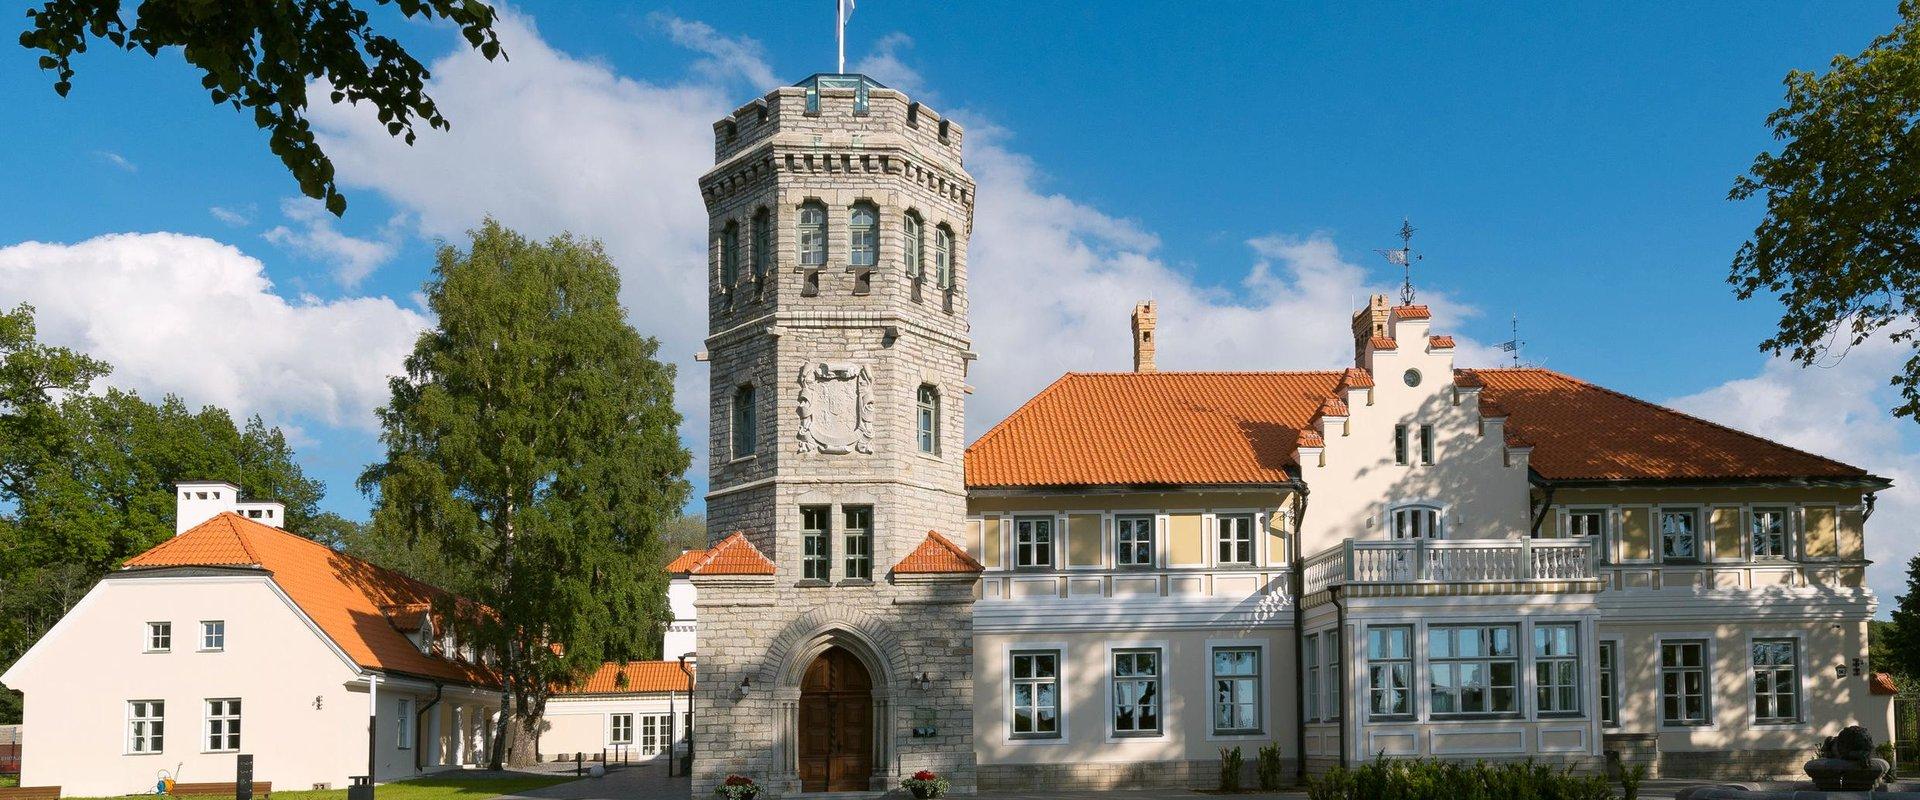 Igaunijas vēstures muzeja Mārjamē pils